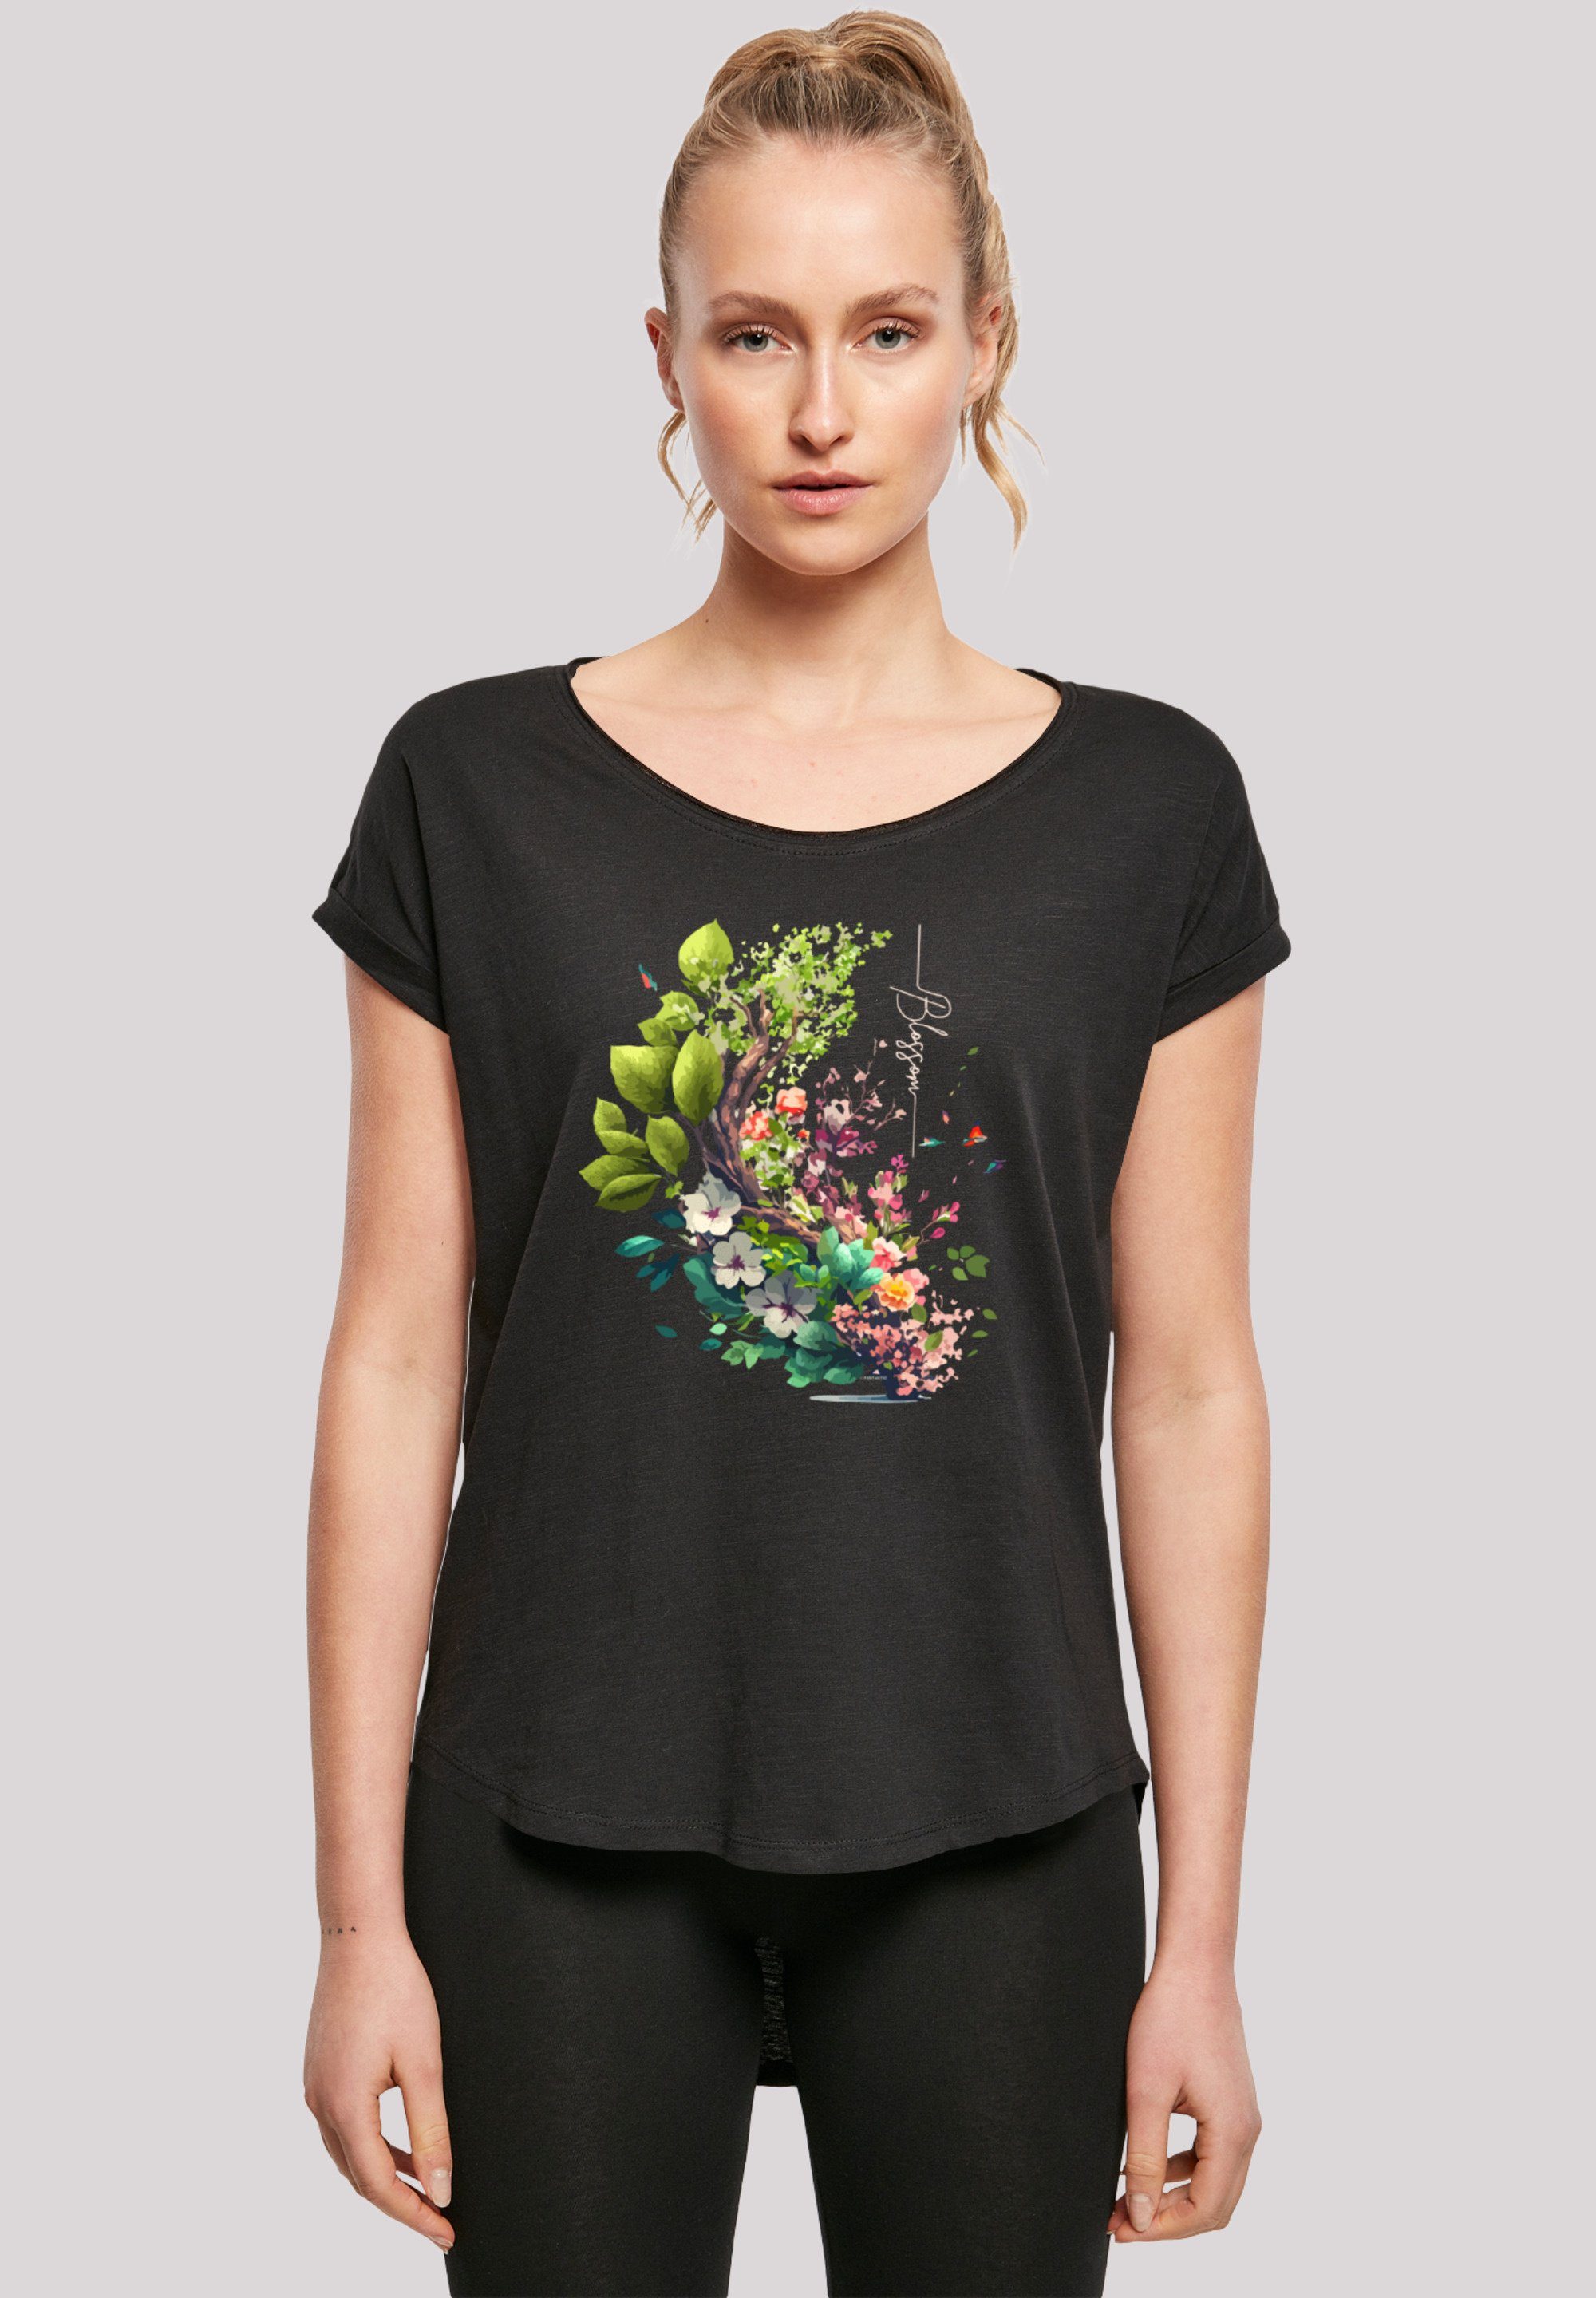 Sehr T-Shirt Tragekomfort weicher Blumen Baum Print, hohem Baumwollstoff F4NT4STIC mit mit